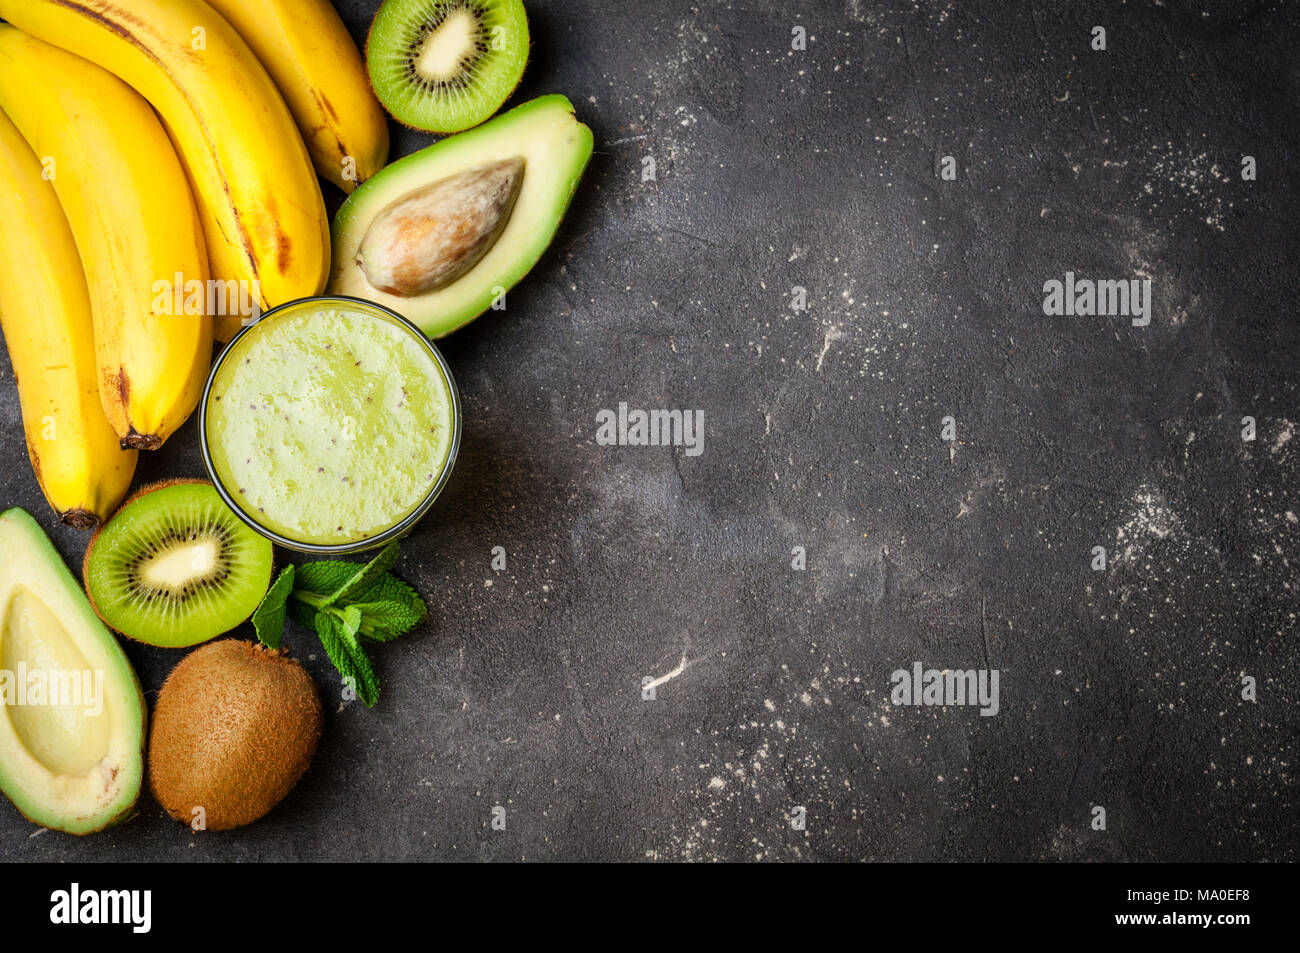 Un sano frullato verde e gli ingredienti su sfondo scuro. Frullato di kiwi con frutti. Concetto superfoods, dieta disintossicante, salute cibo vegetariano Foto Stock